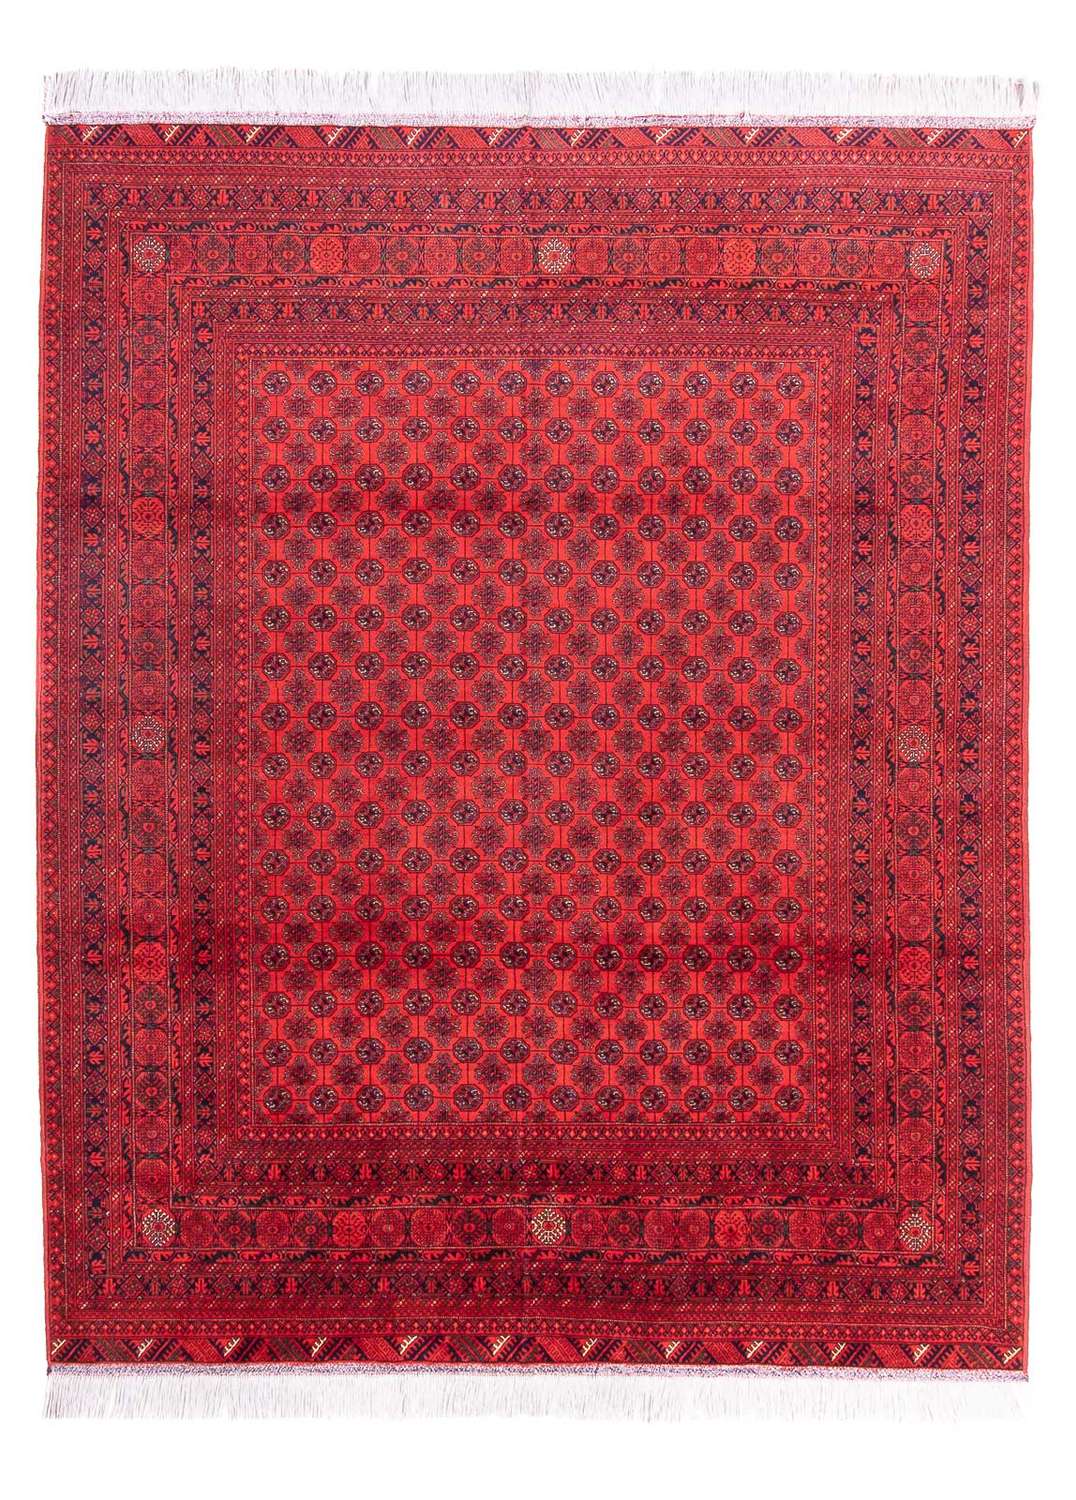 Afghan Rug - 387 x 298 cm - red